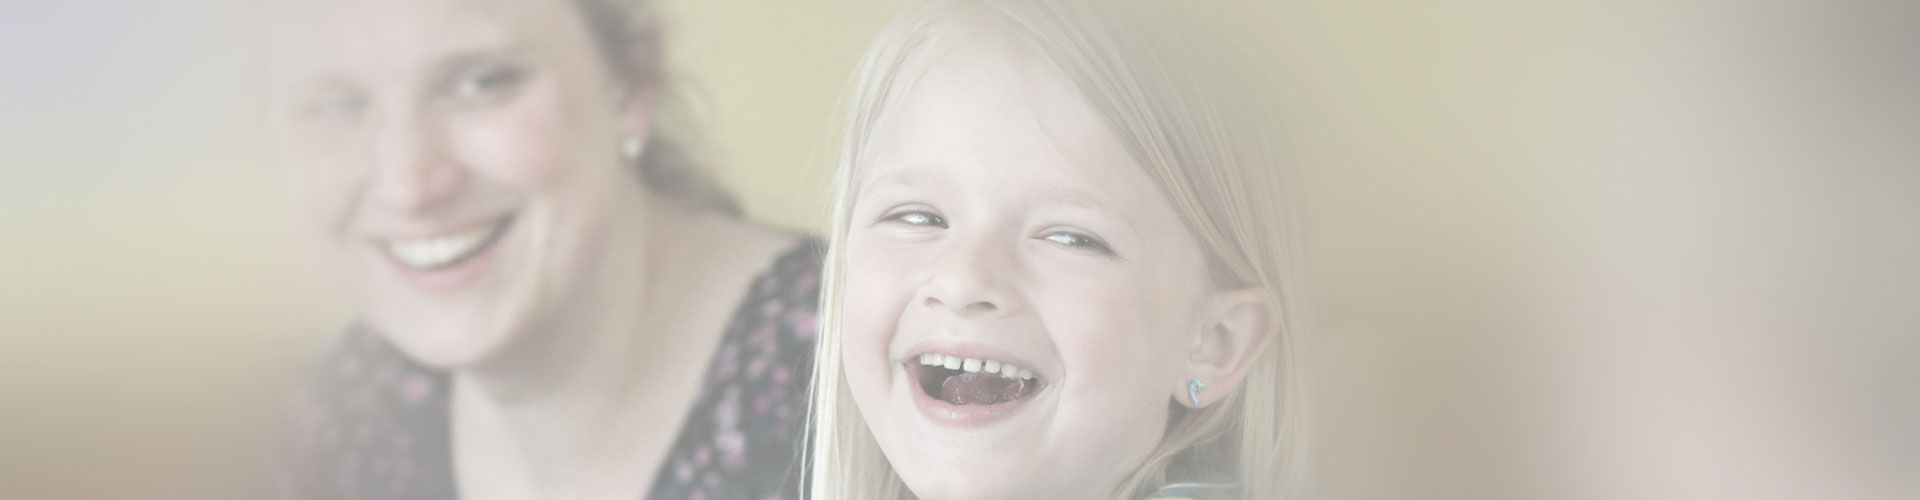 Foto eines lachenden Kindes mit zufrieden lächelnder Frau im Hintergrund.